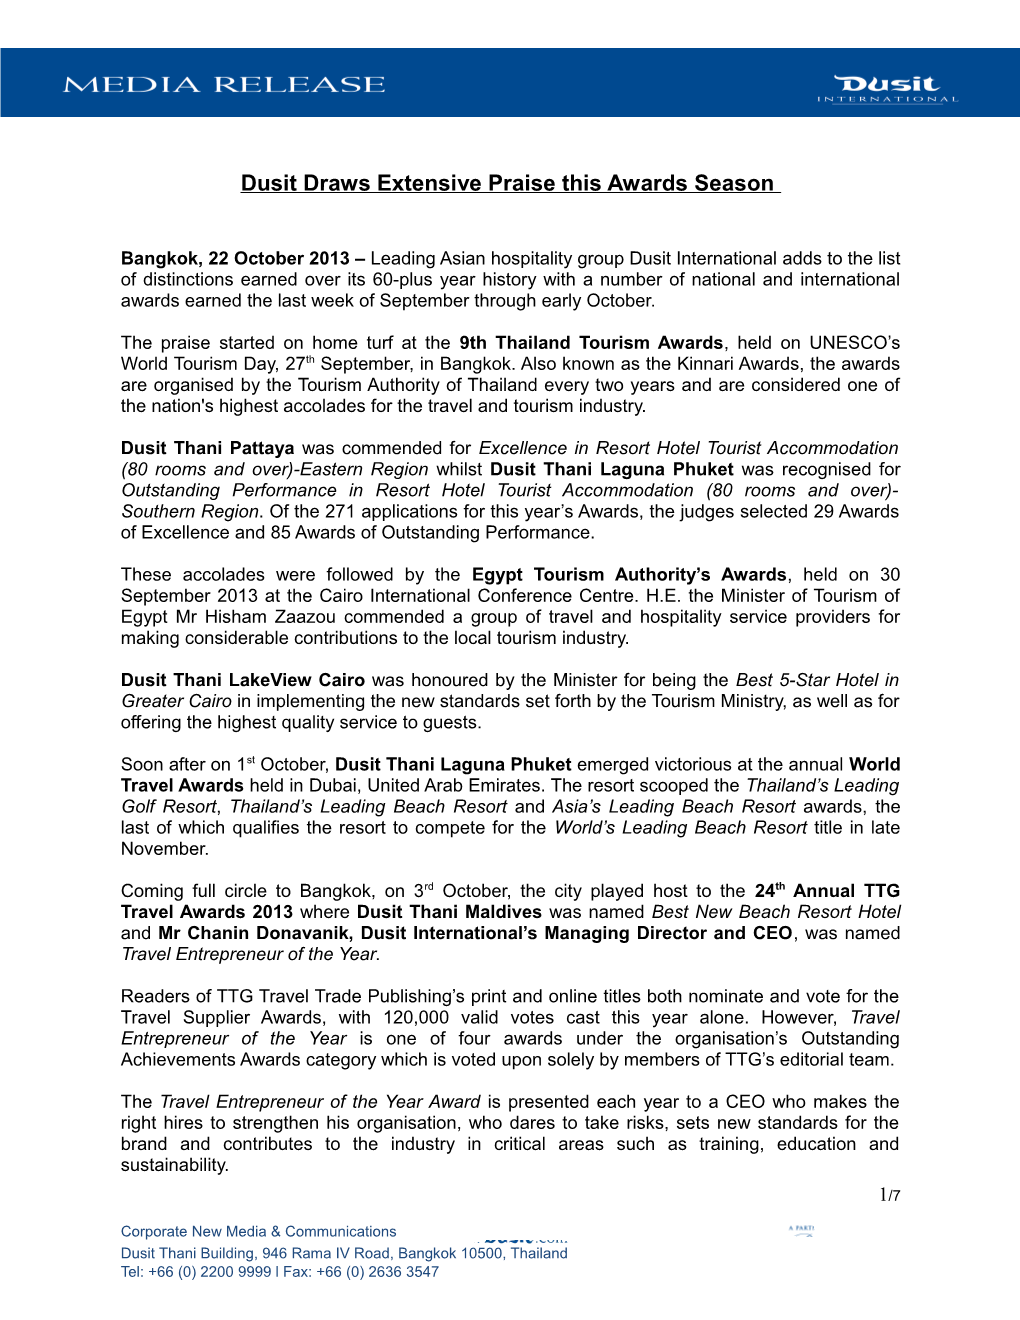 Dusit Draws Extensive Praise This Awards Season